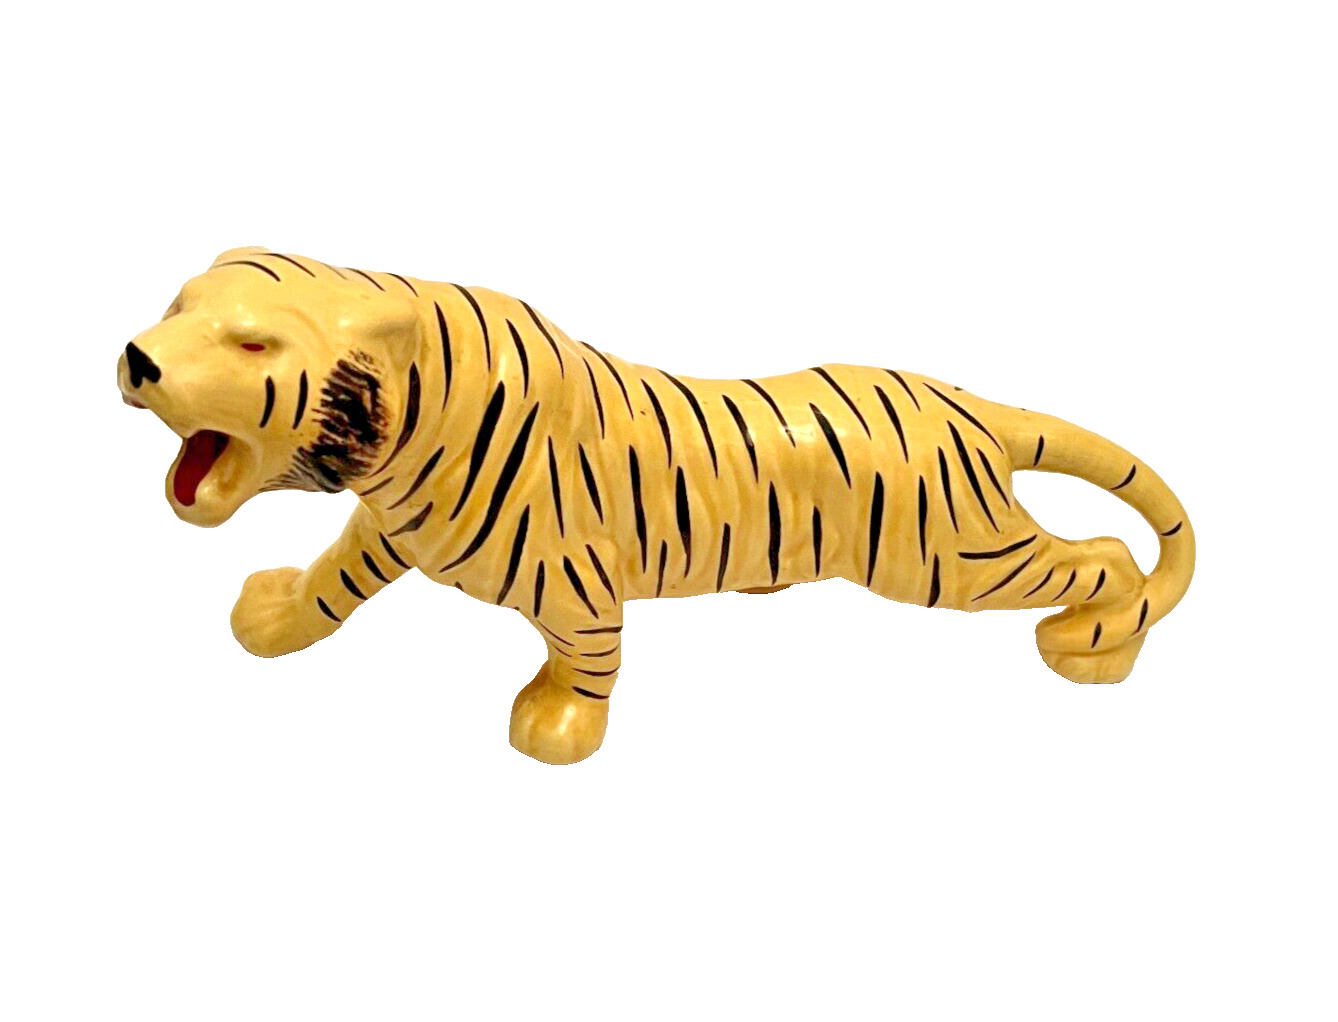 Vintage Large Mid Century Ceramic Safari Tiger Animal Figurine 1970's Sculpture